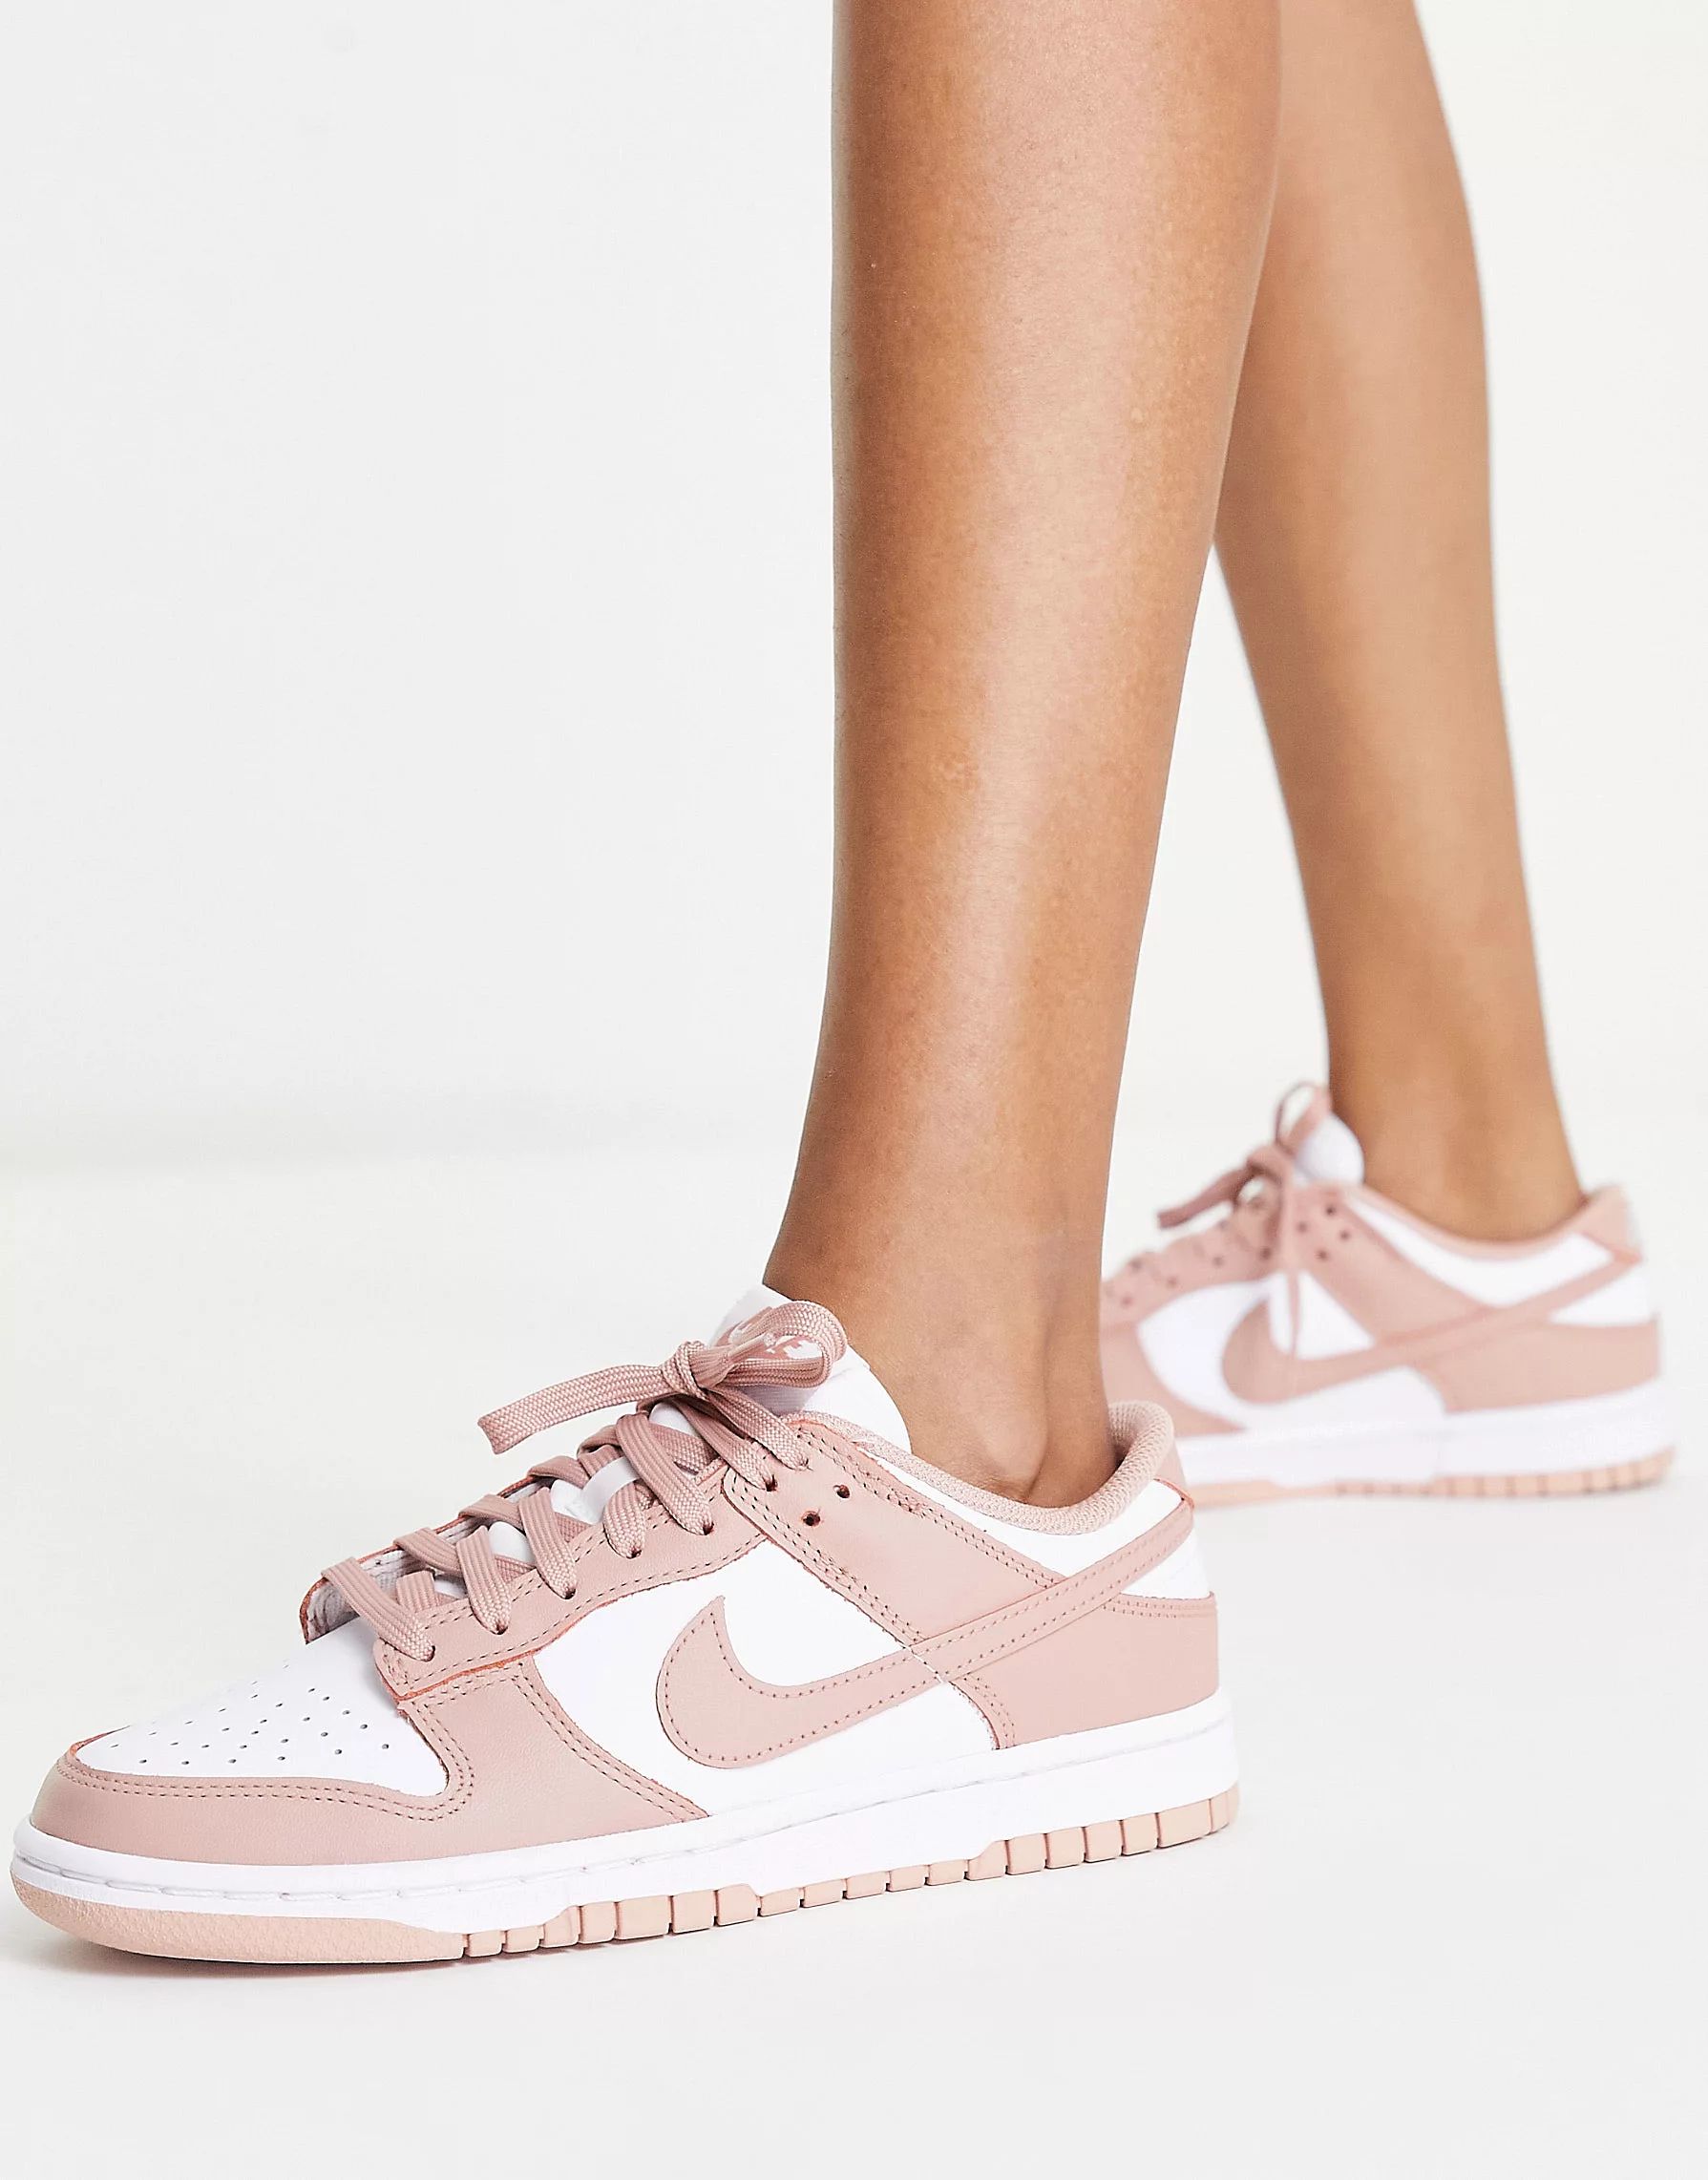 Nike Dunk Low sneakers in rose pink | ASOS | ASOS (Global)